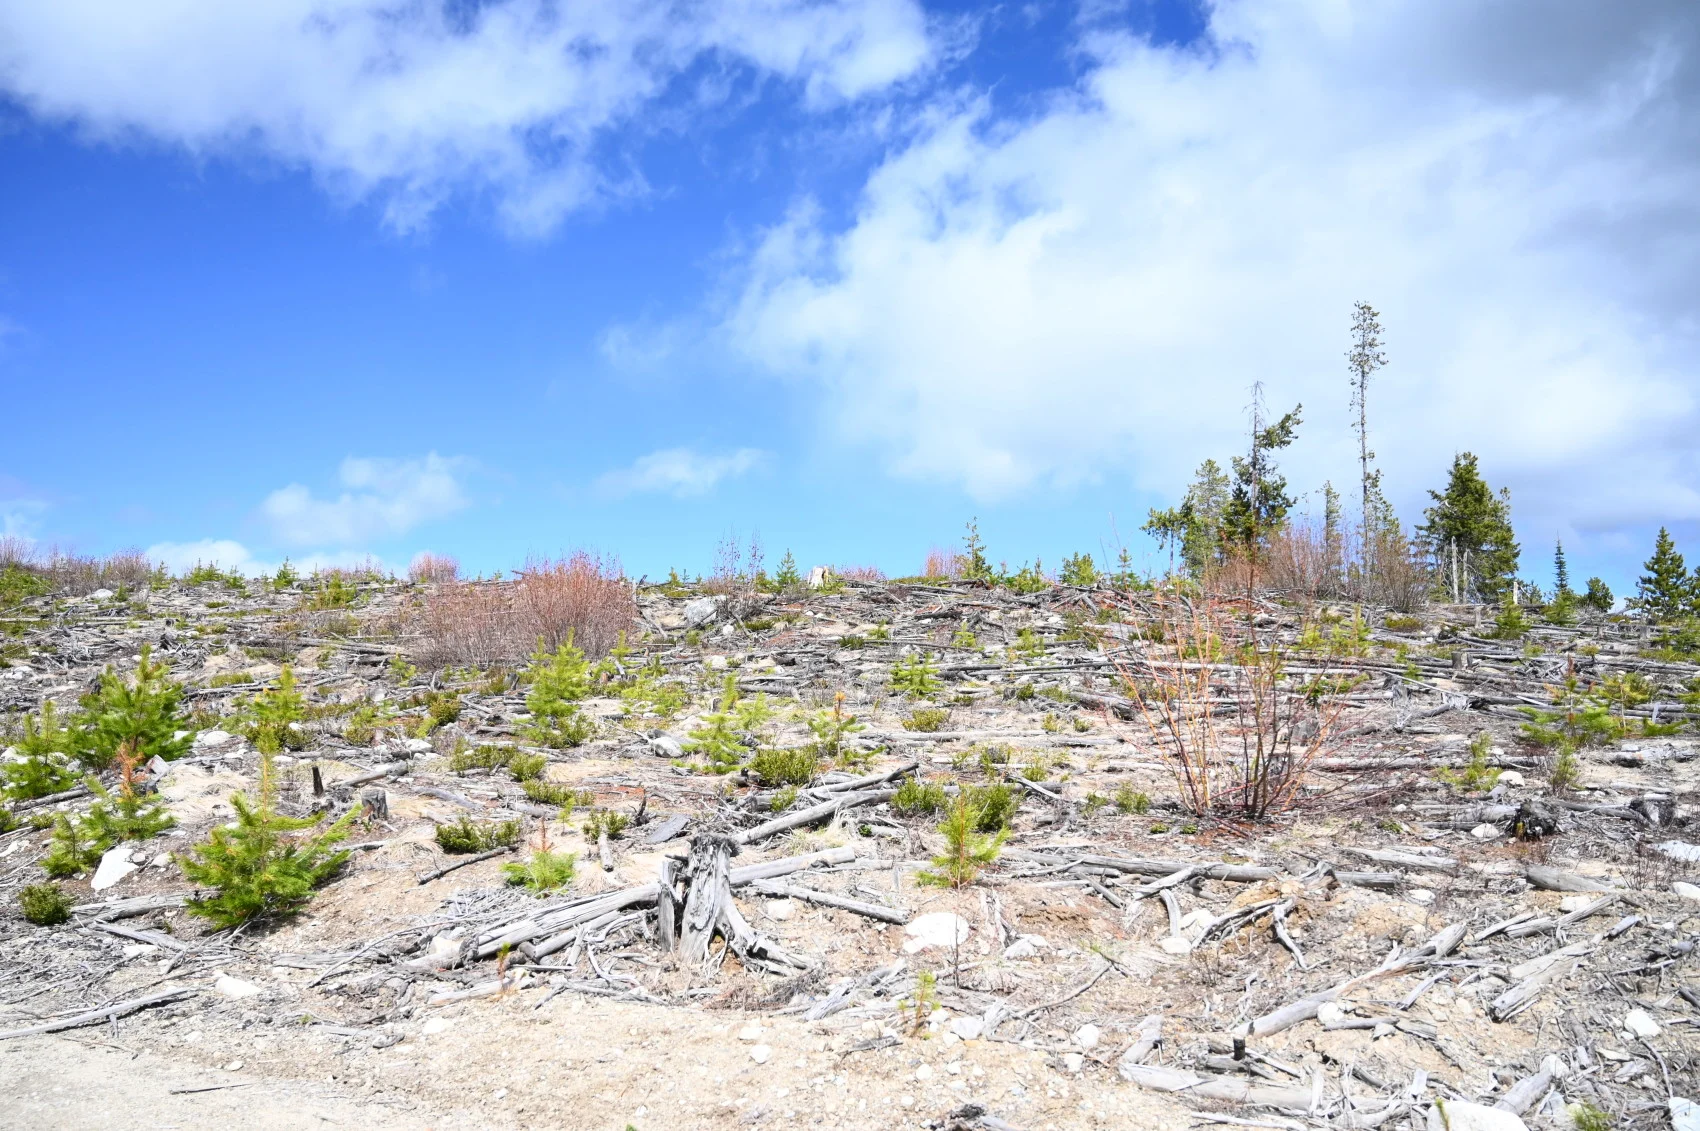  An area of clearcuts in Peachland, B.C. (Mia Gordon)